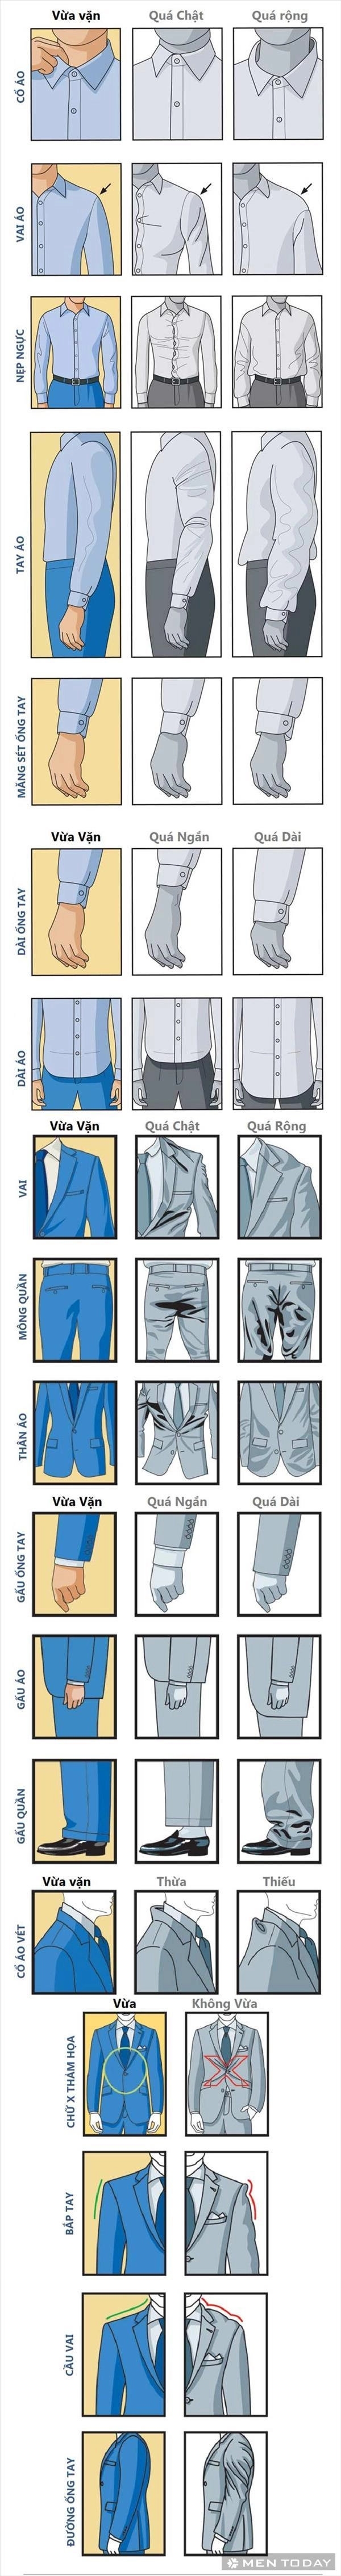 Khái niệm chuẩn đẹp của suit nam - 2